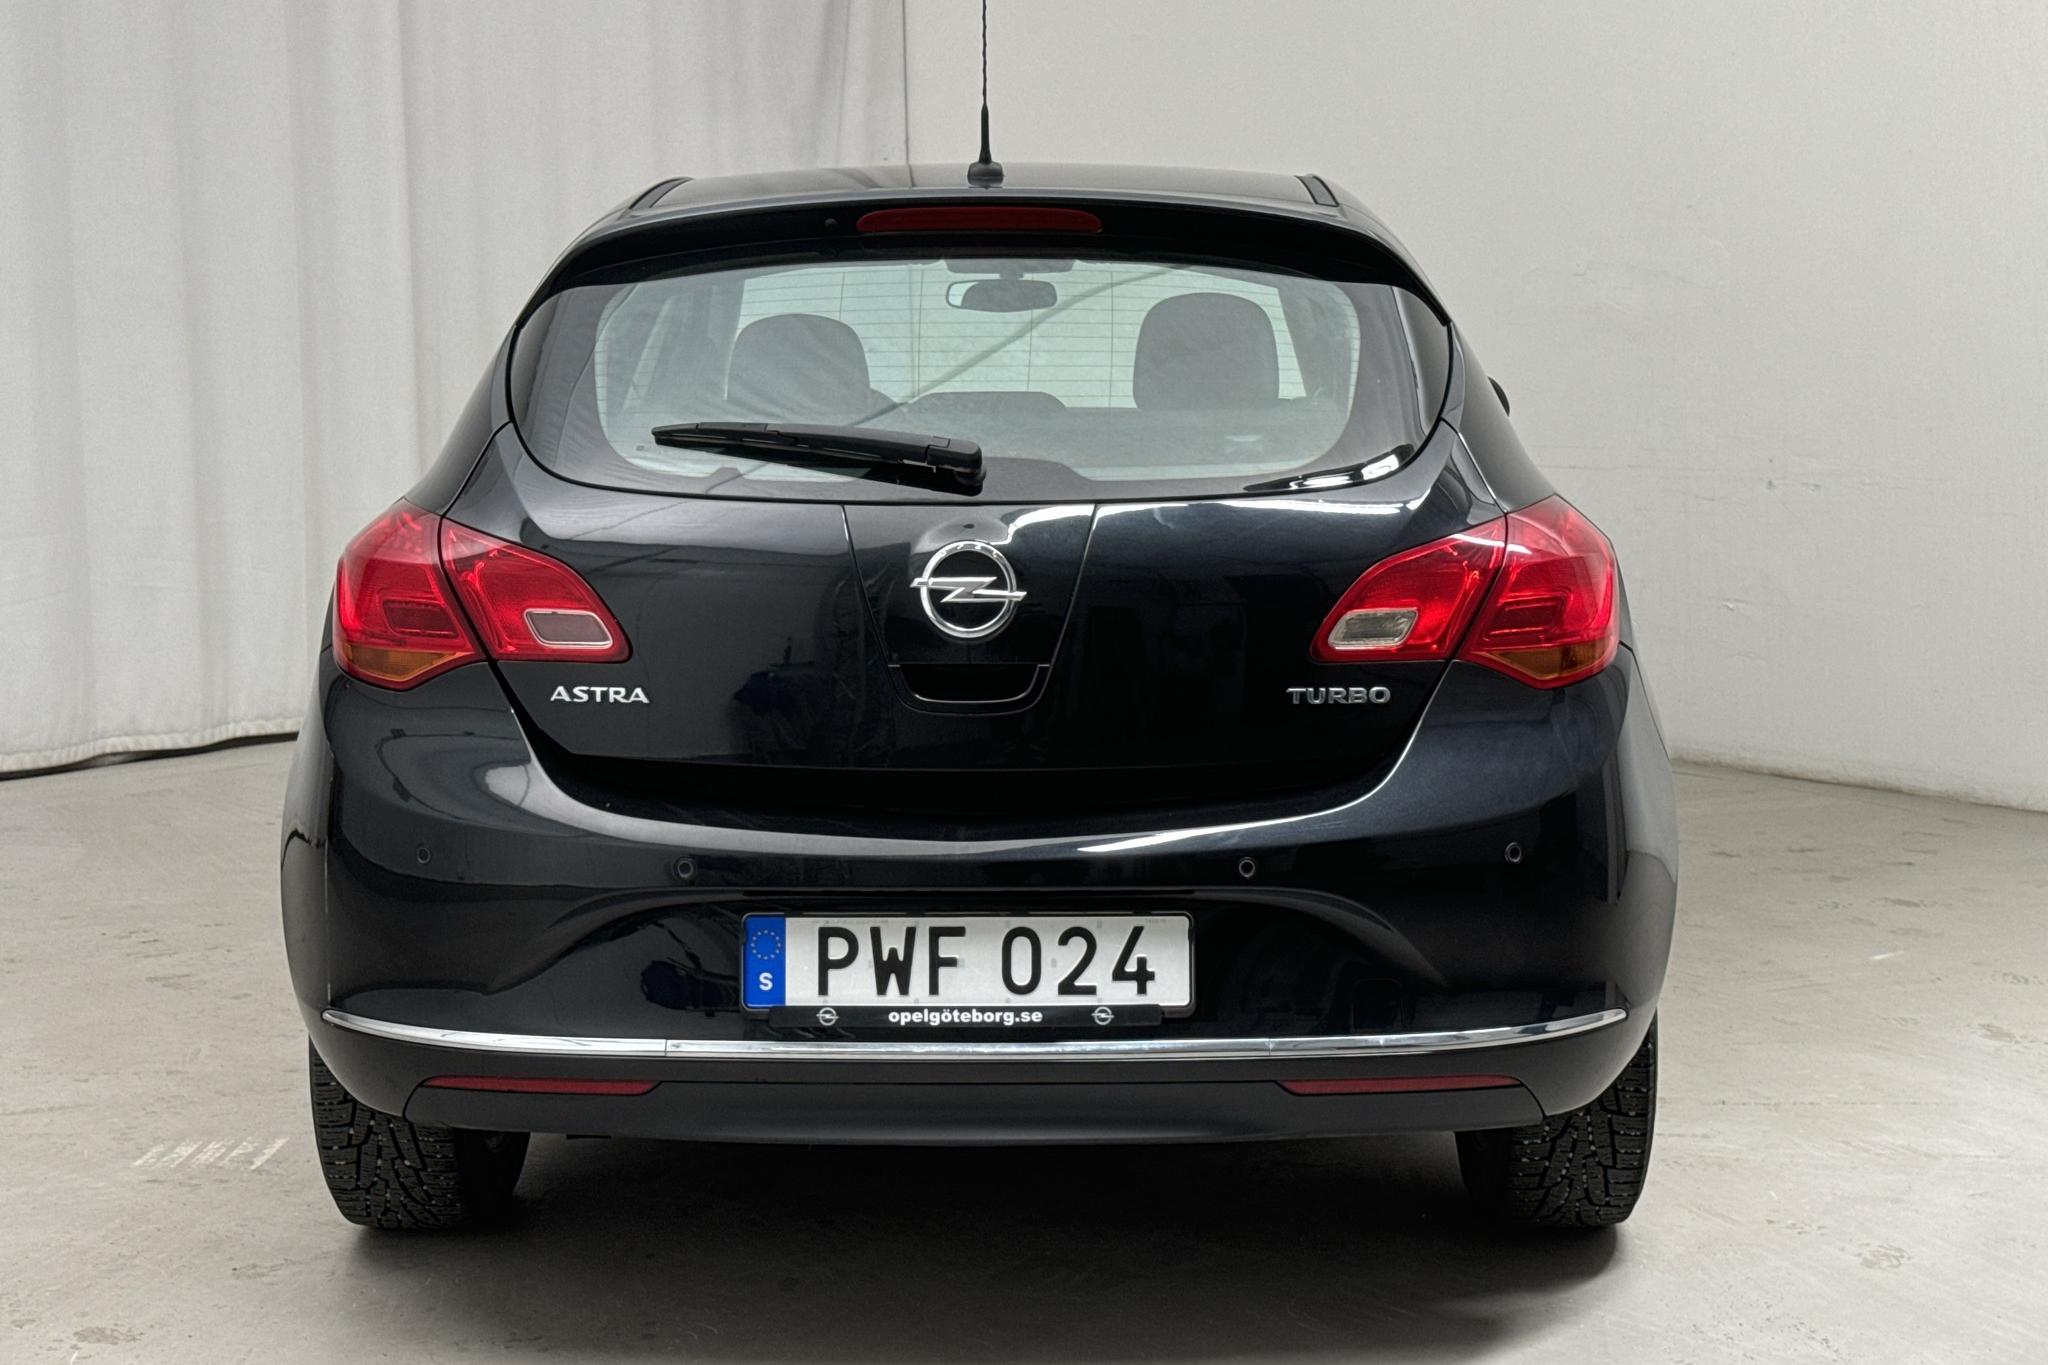 Opel Astra 1.4 Turbo ECOTEC 5dr (140hk) - 83 710 km - Manual - black - 2014